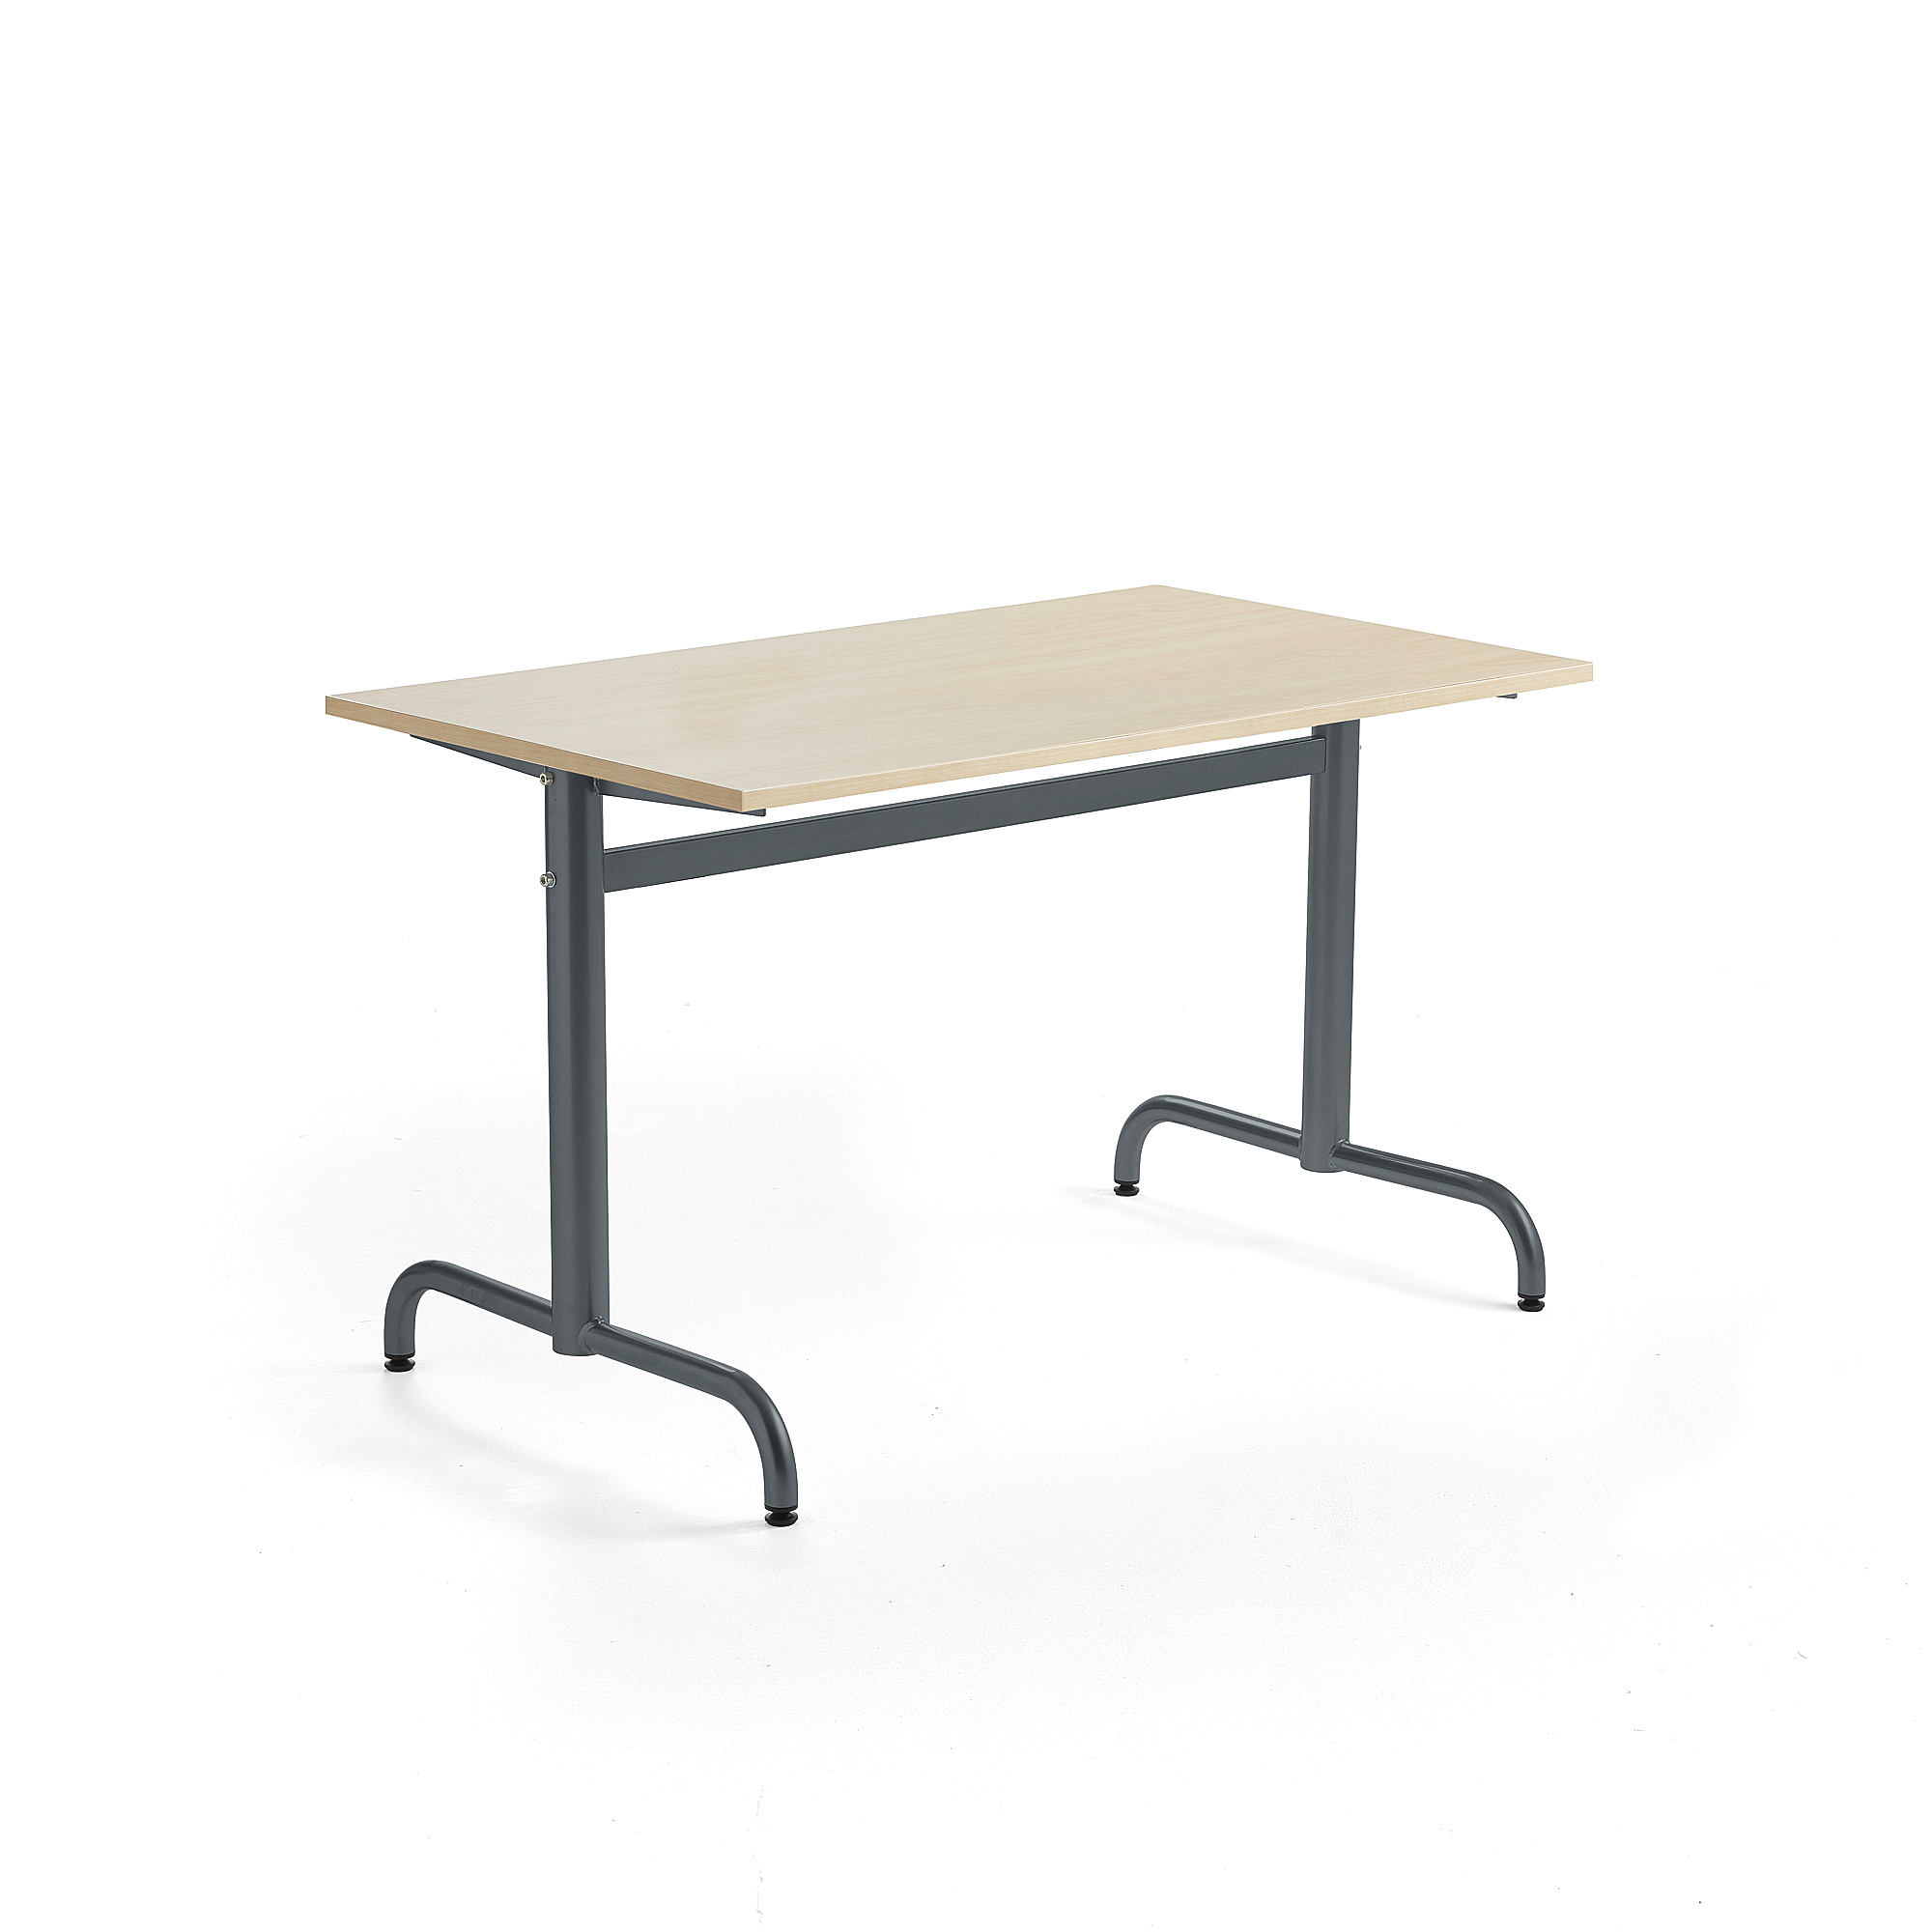 Stůl PLURAL, 1200x700x720 mm, akustická HPL deska, bříza, antracitově šedá